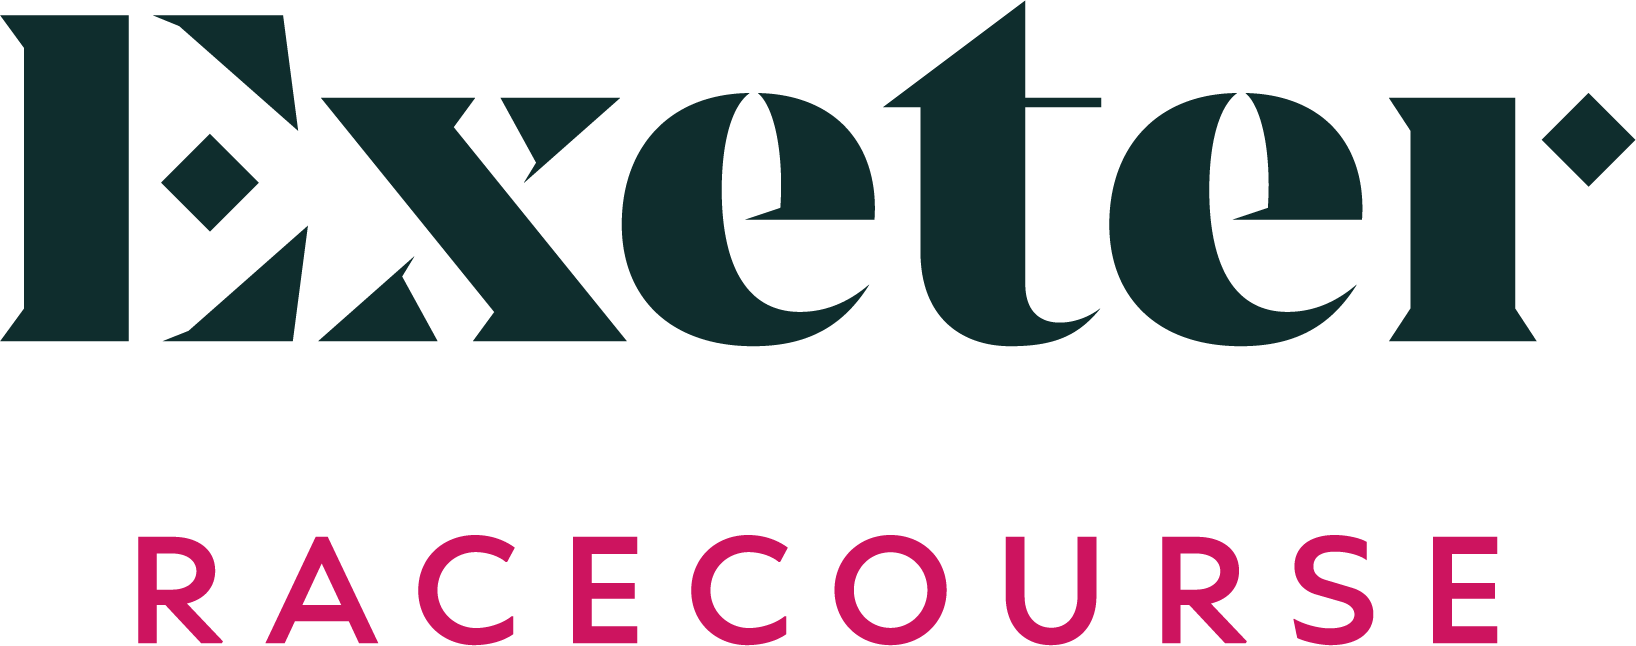 Exeter Racecourse Logo Full Colour RGB